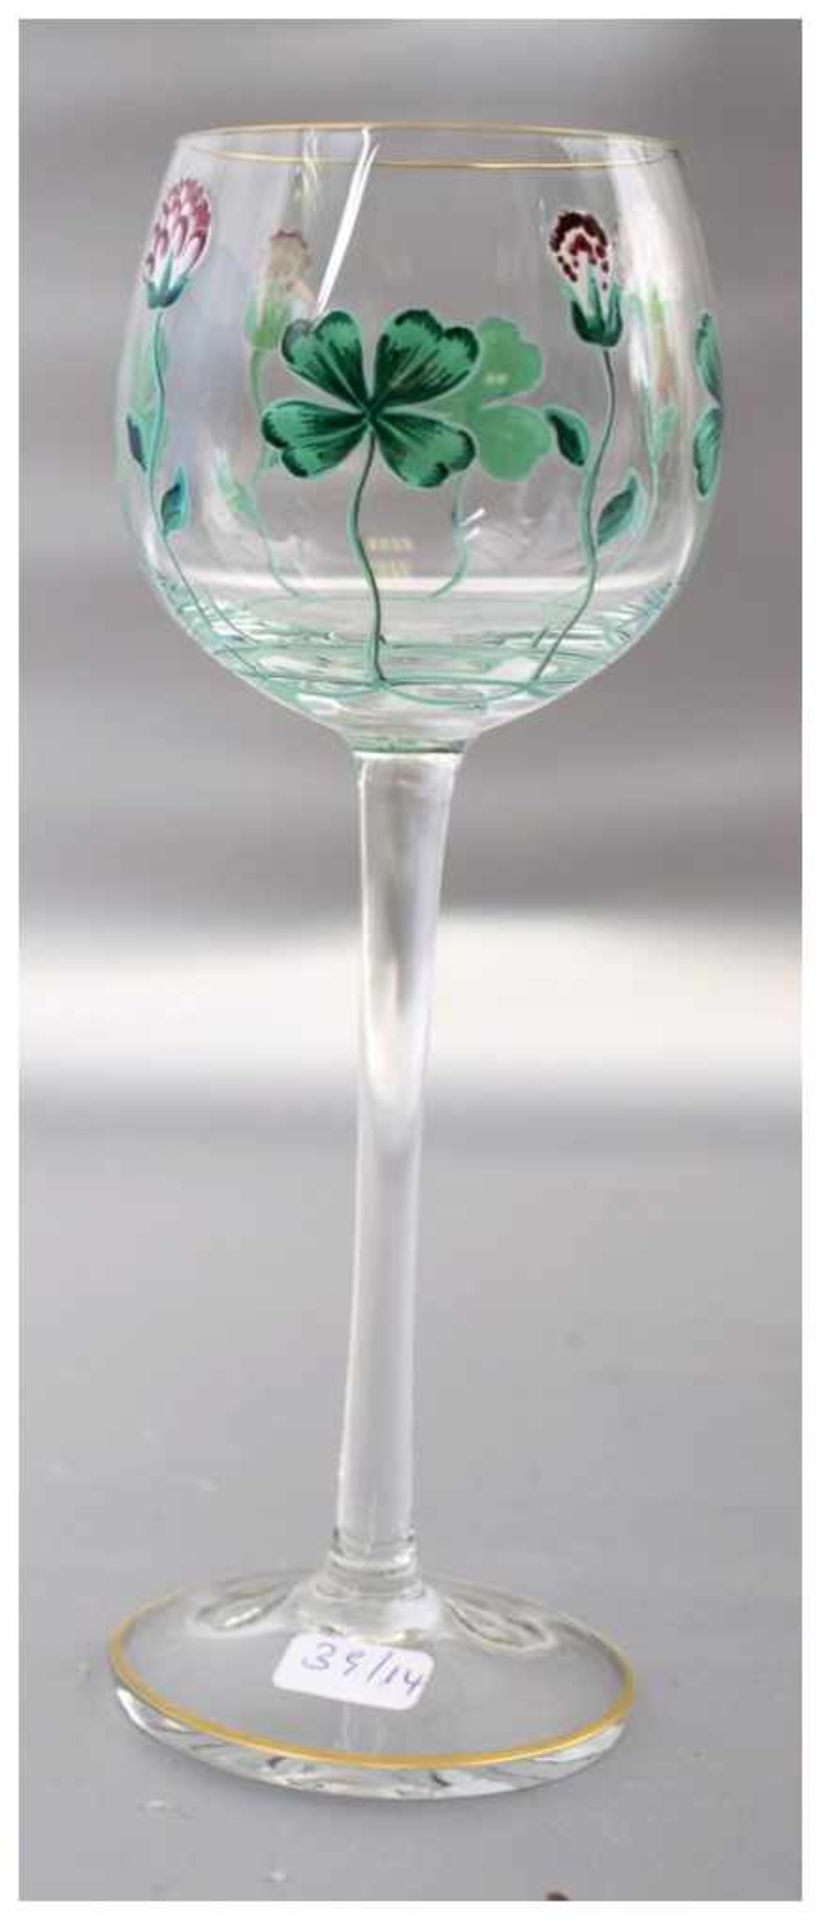 Weinglas farbl. Glas, Kelch mit Goldrand, mit grüner und bunter Blumenbemalung, H 19 cm, um 1900